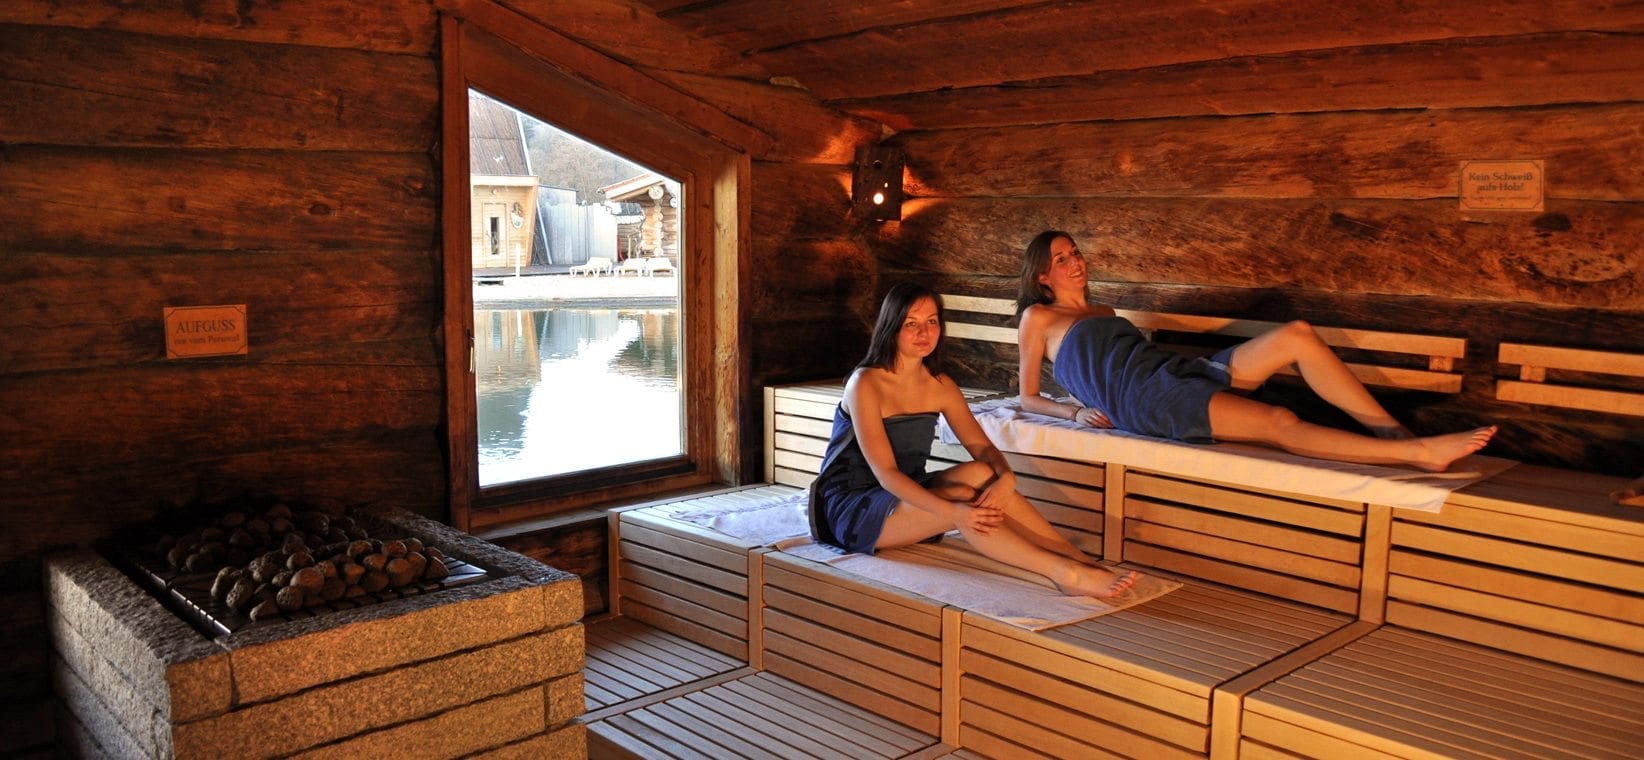 Erfahrungen sauna gemischt Hauptfeststellung der